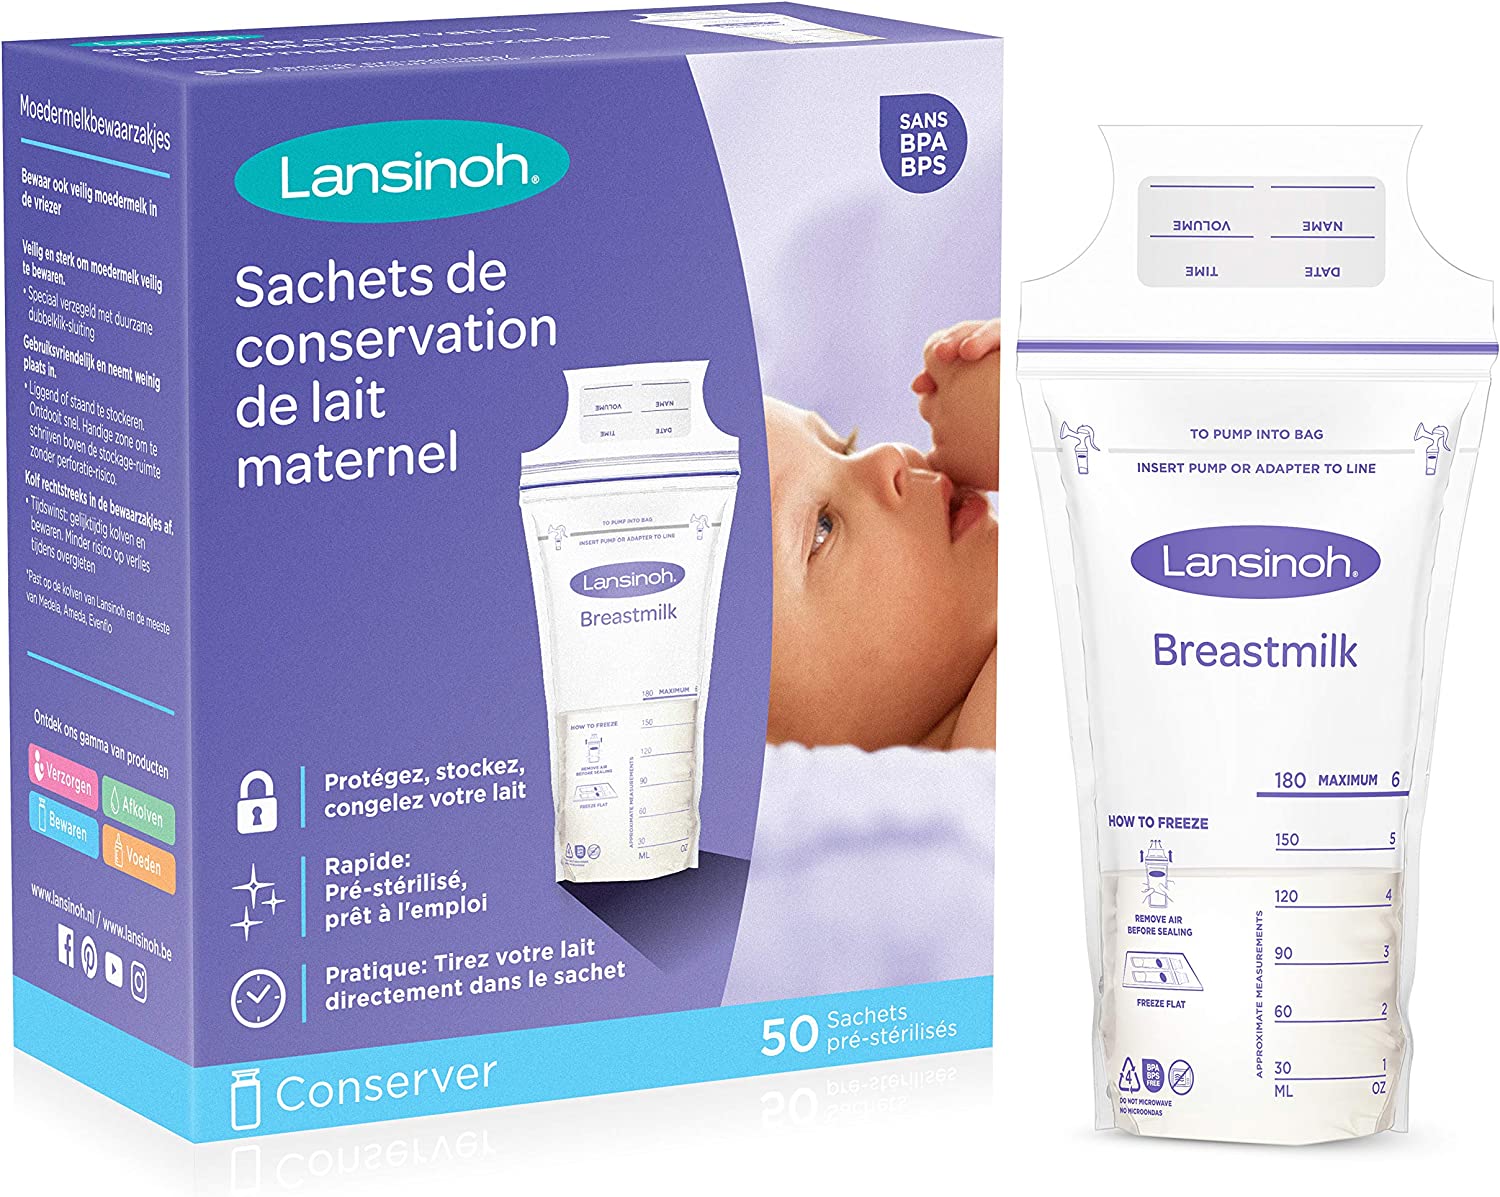 sachets de conservation lait maternel - Lansinoh